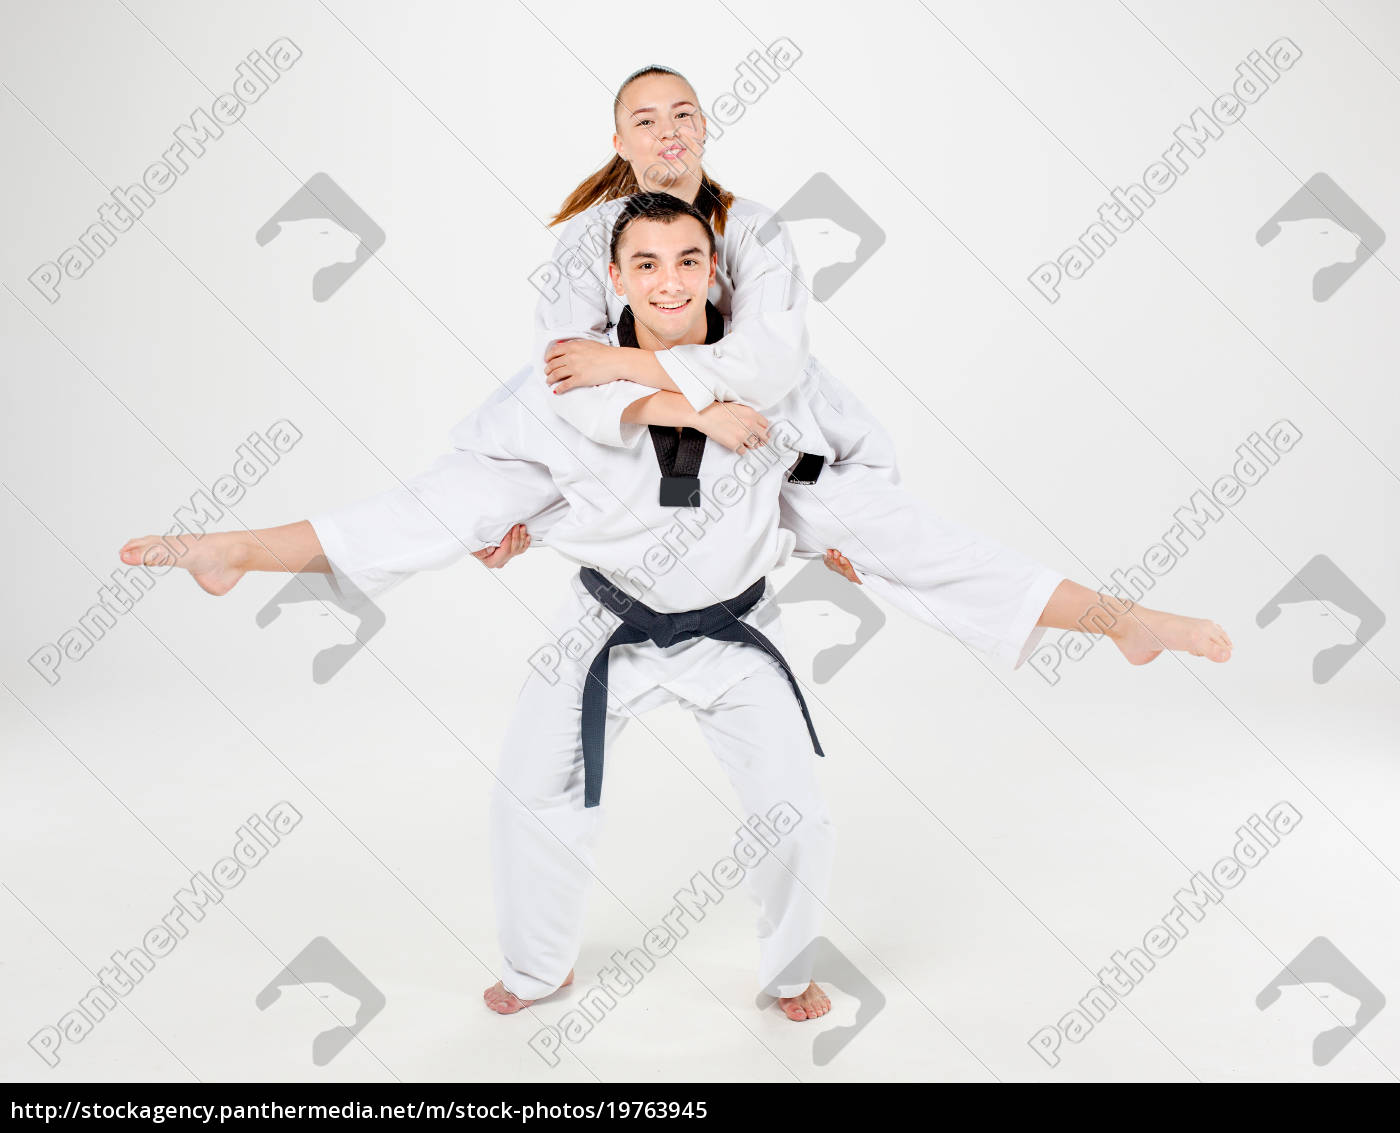 Das Karate Mädchen Und Junge Mit Schwarzen Gürteln Lizenzfreies Bild 19763945 Bildagentur 